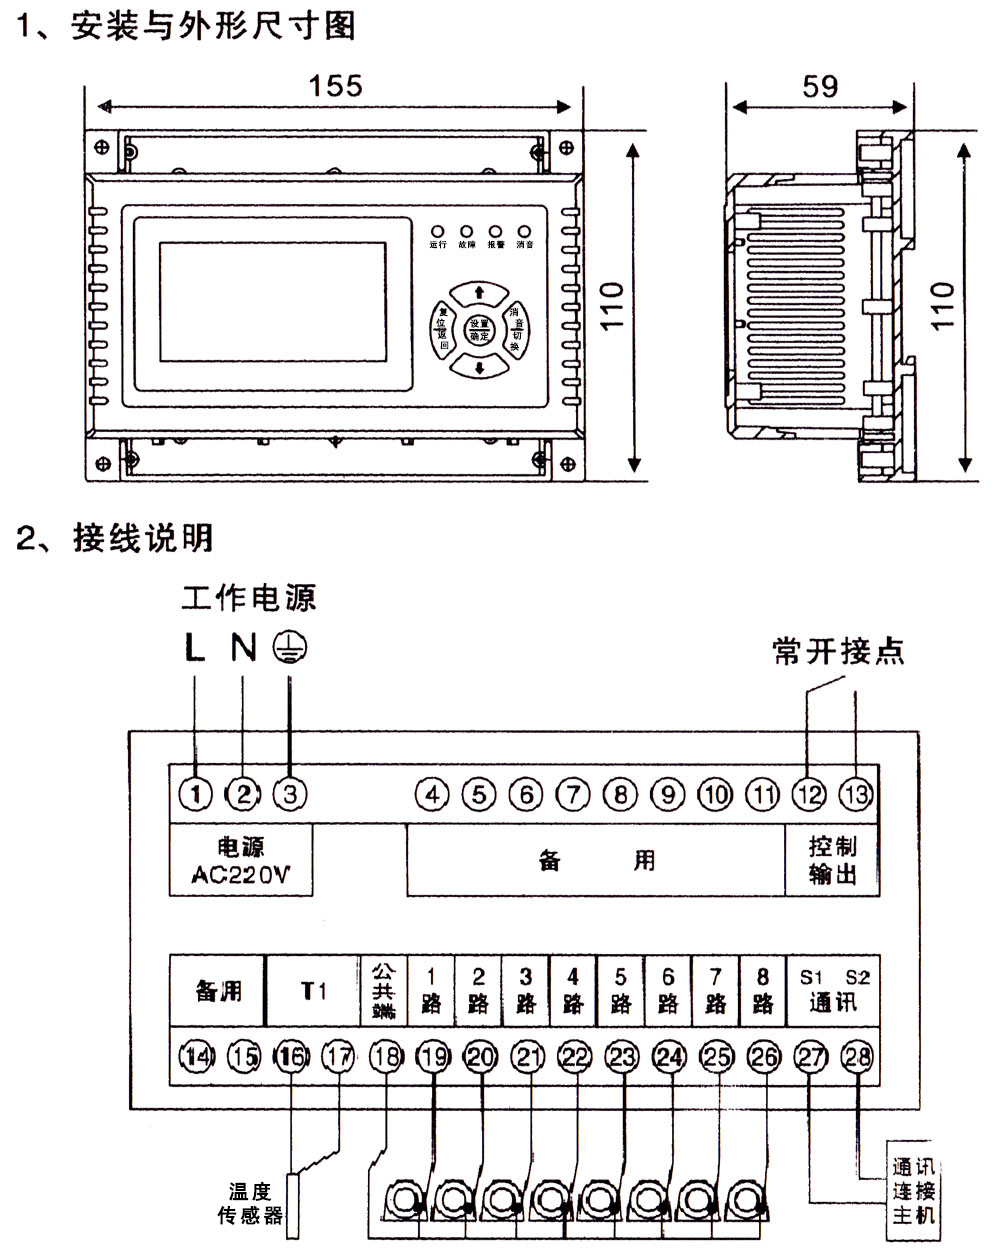 ASF601-E-电气火灾监控器-1.jpg